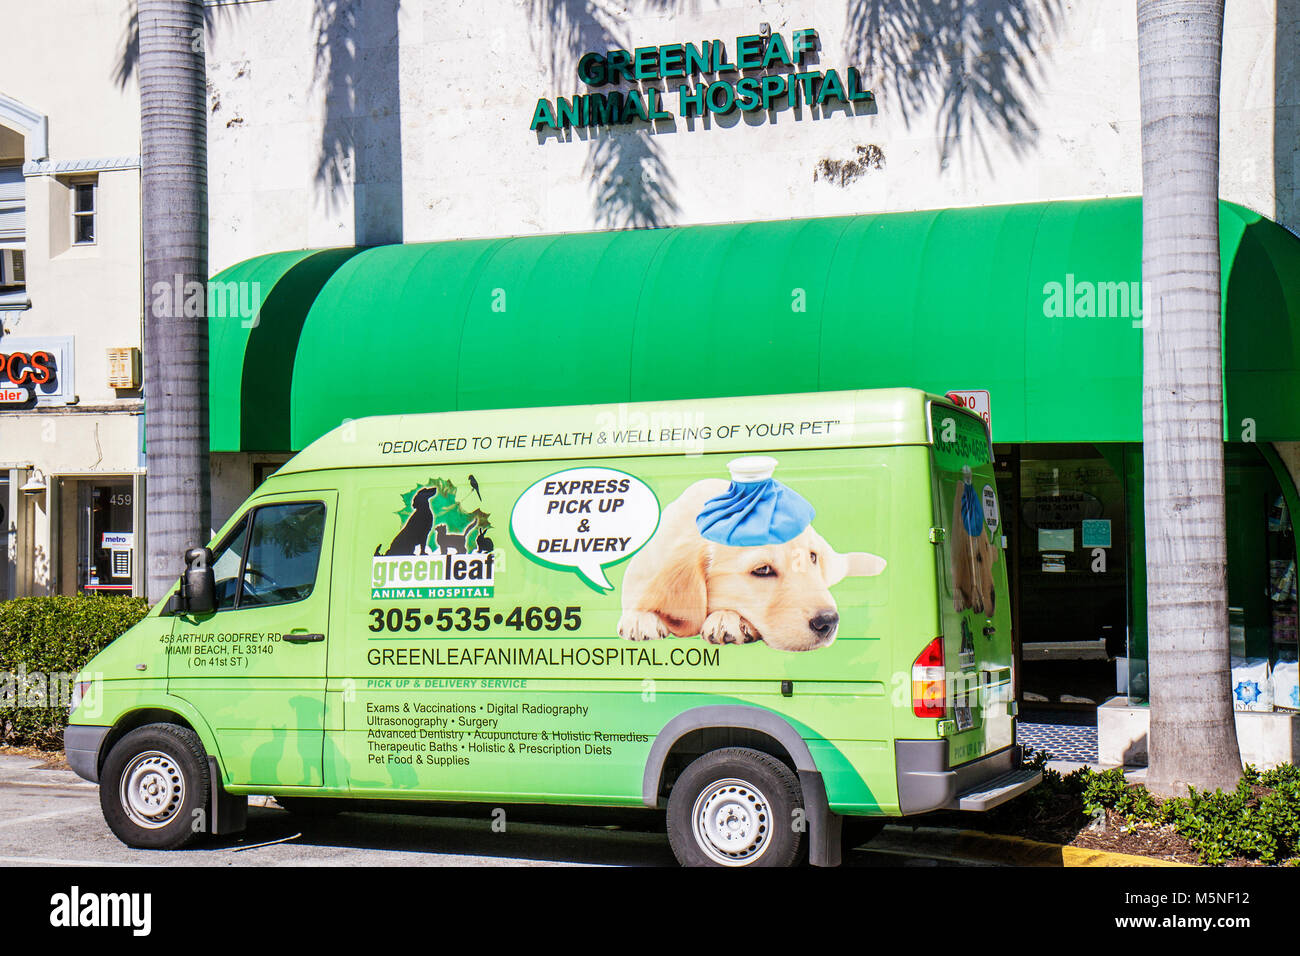 Miami Beach Florida, 41. Straße, Greenleaf Animal Hospital, Gesundheitswesen, Tierarzt, Tierarzt, Nutzfahrzeug, Lieferwagen, Werbung, Werbung, ad, Haustier, Gesundheit, krank, Stockfoto